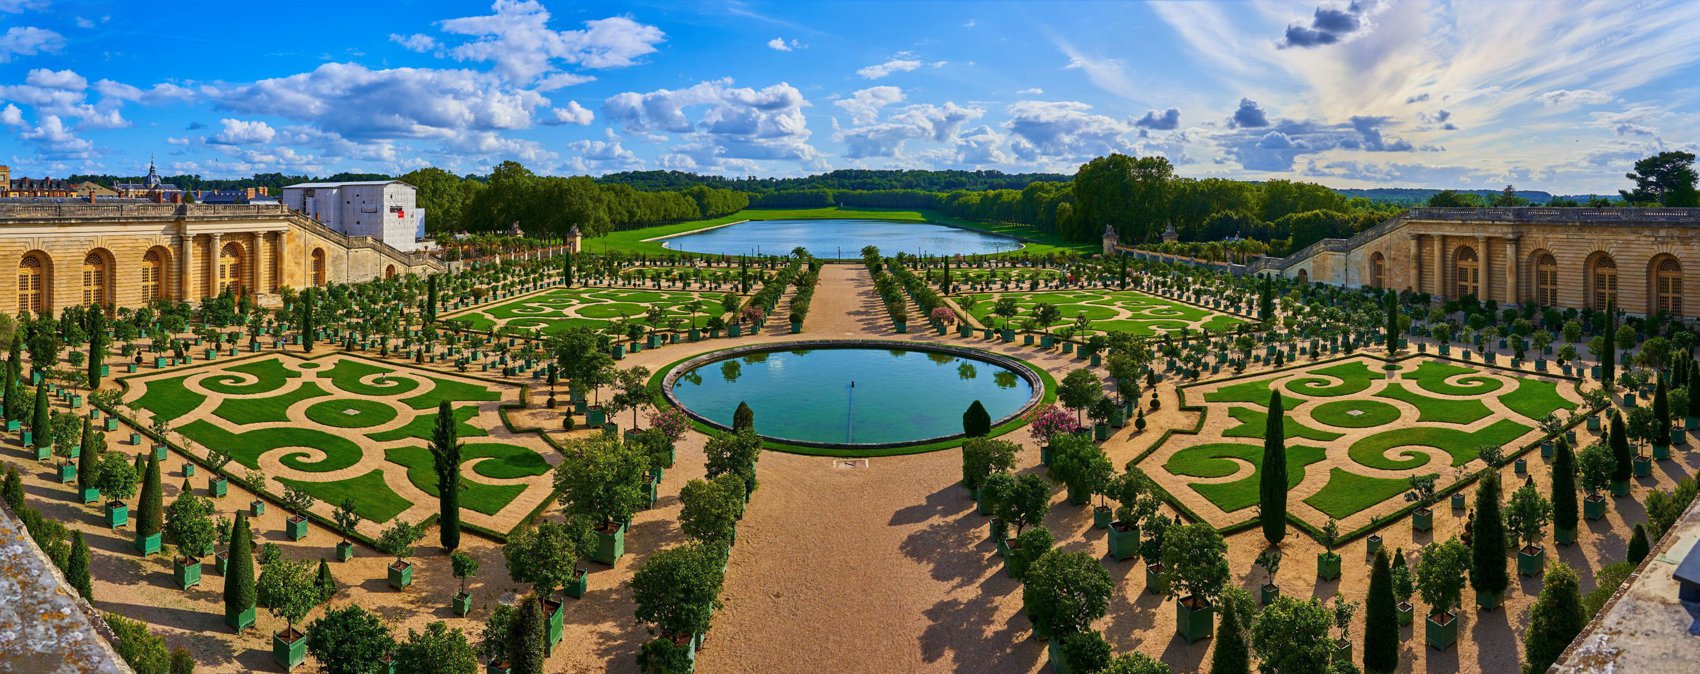 Hero Image for Orangerie @ Chateau de Versailles, Summer 201908